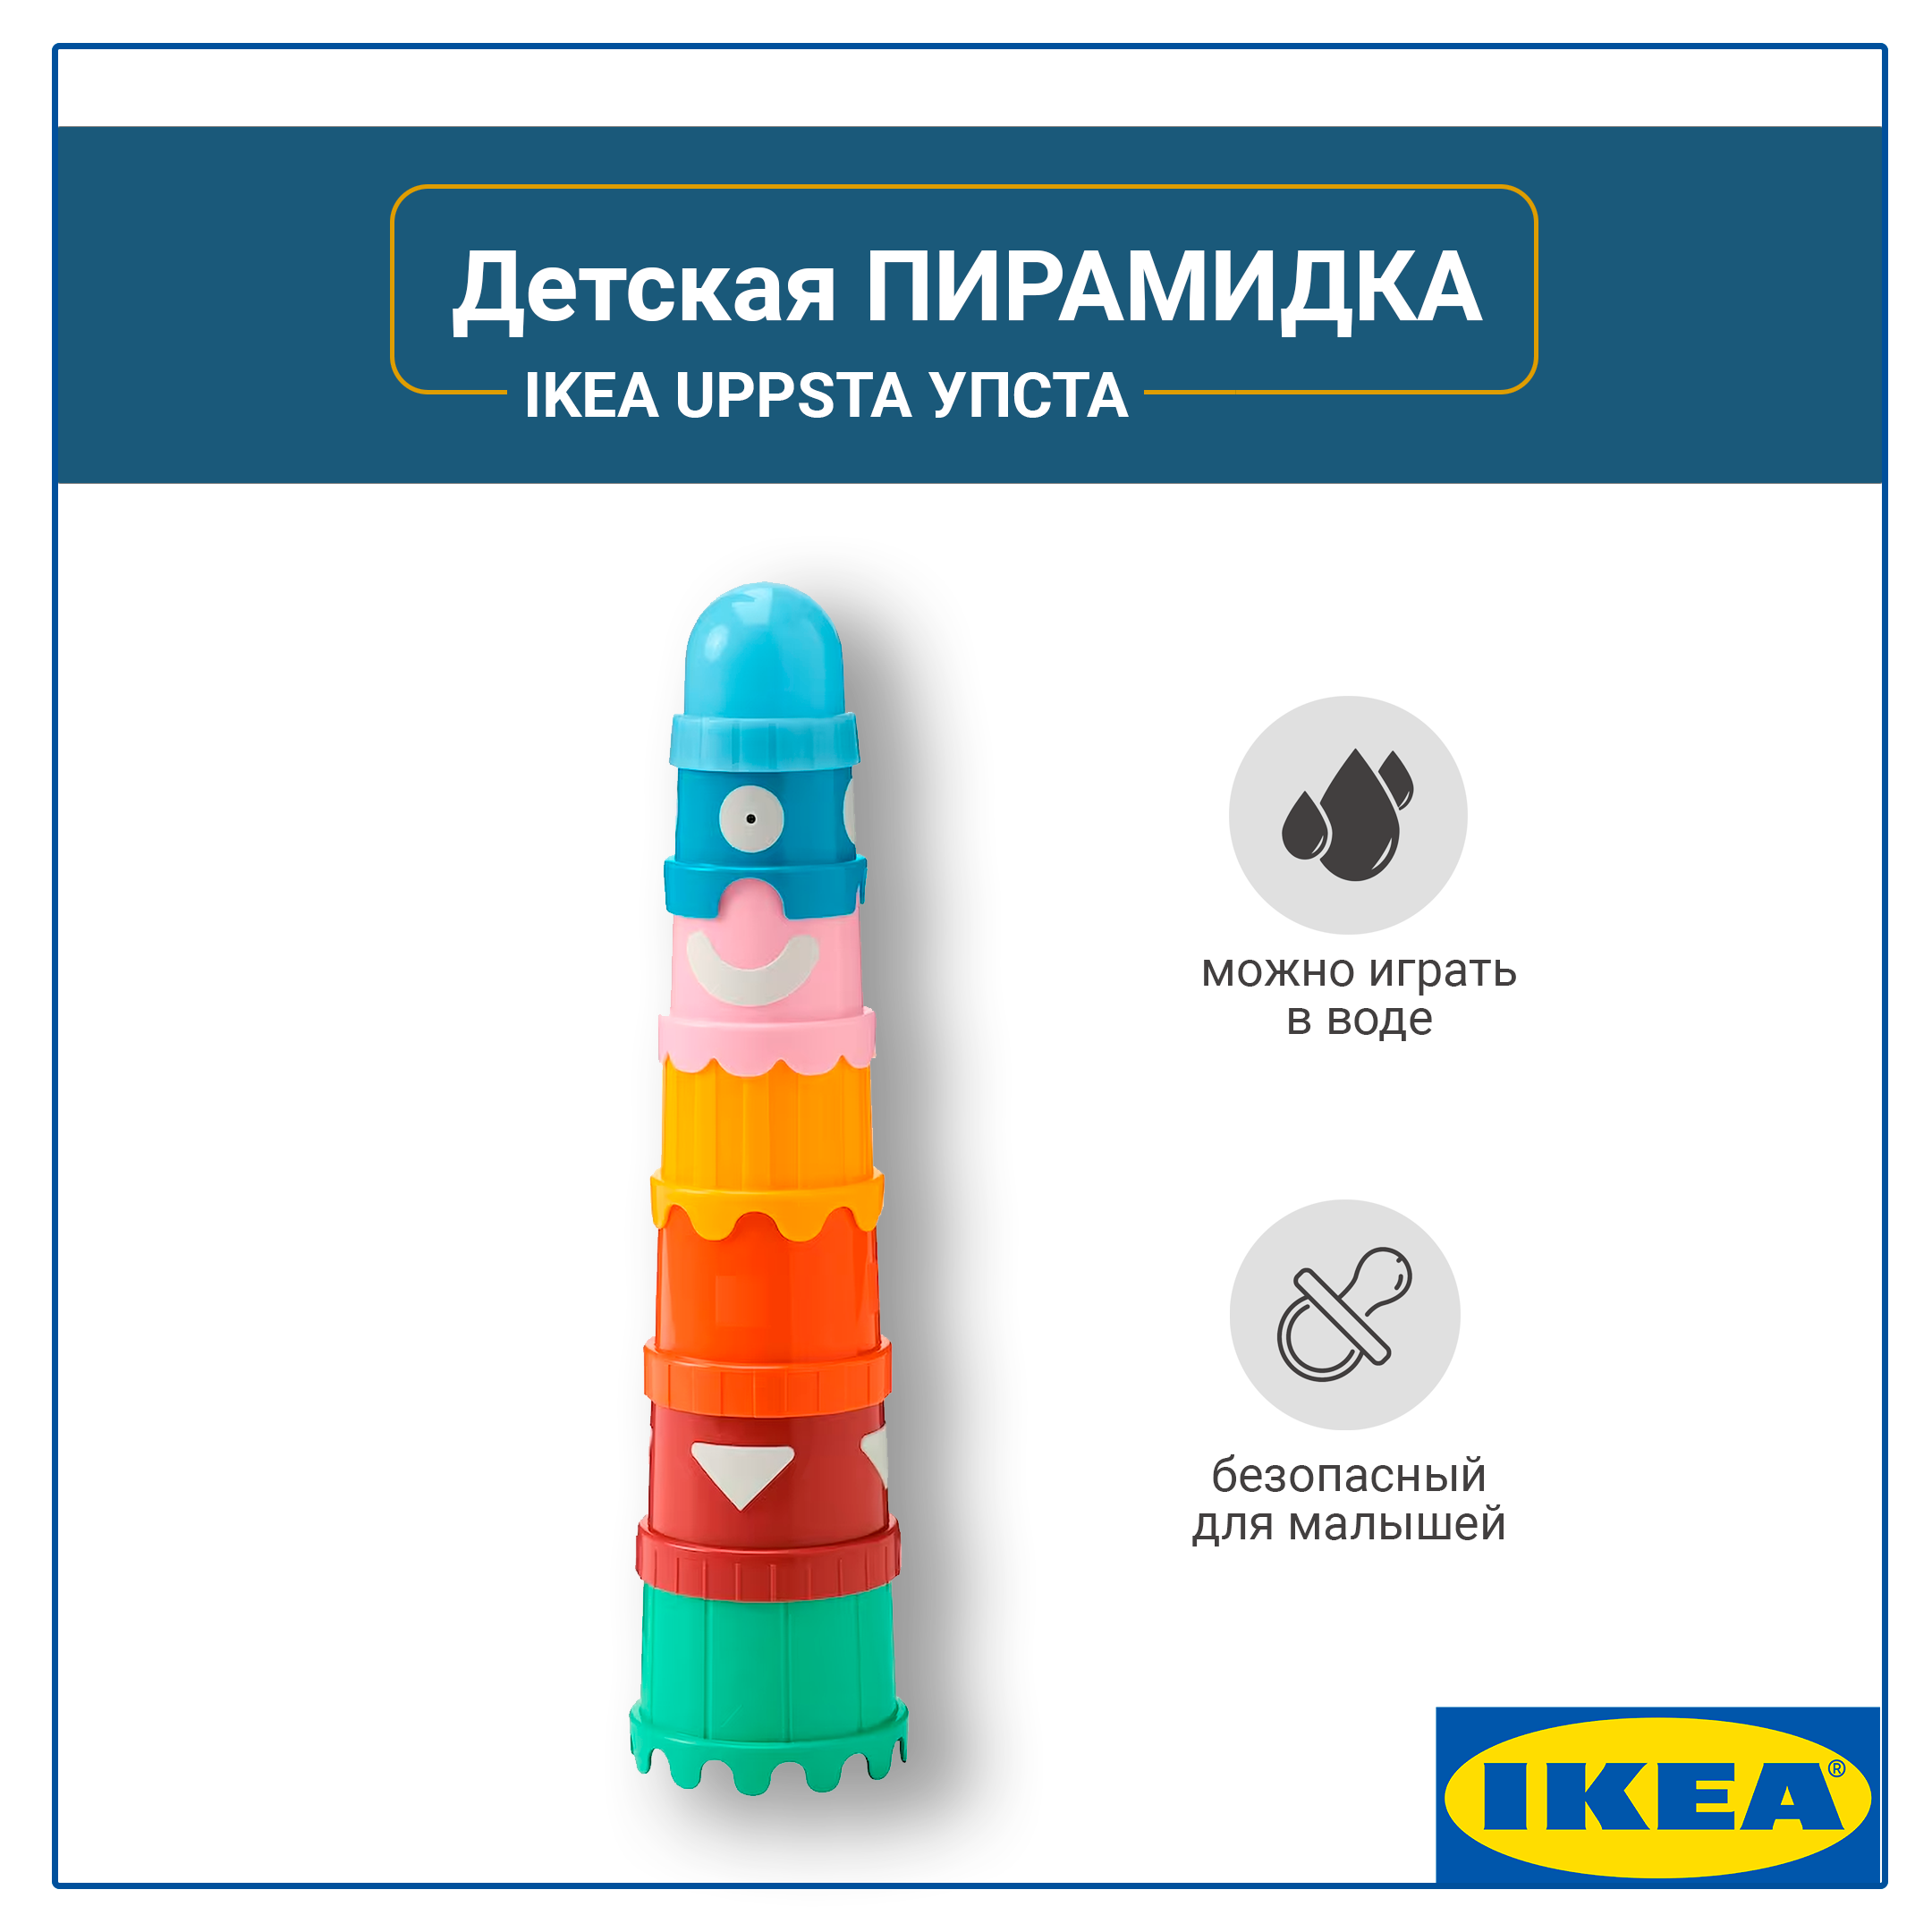 Пирамидка детская, IKEA UPPSTA, стаканчики 7 предметов, развивающая игра для детей